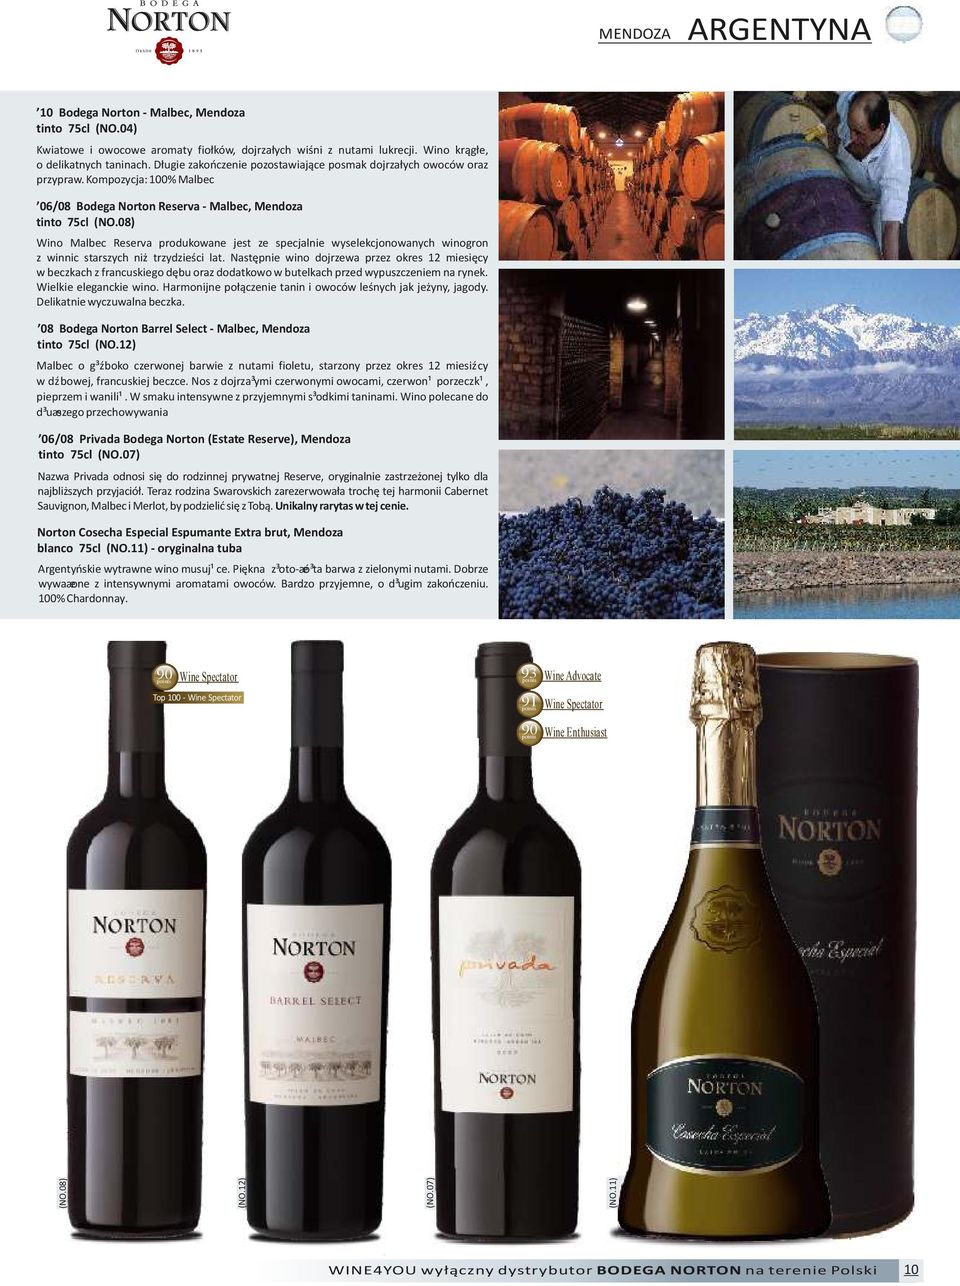 08) Wino Malbec Reserva produkowane jest ze specjalnie wyselekcjonowanych winogron z winnic starszych niż trzydzieści lat.